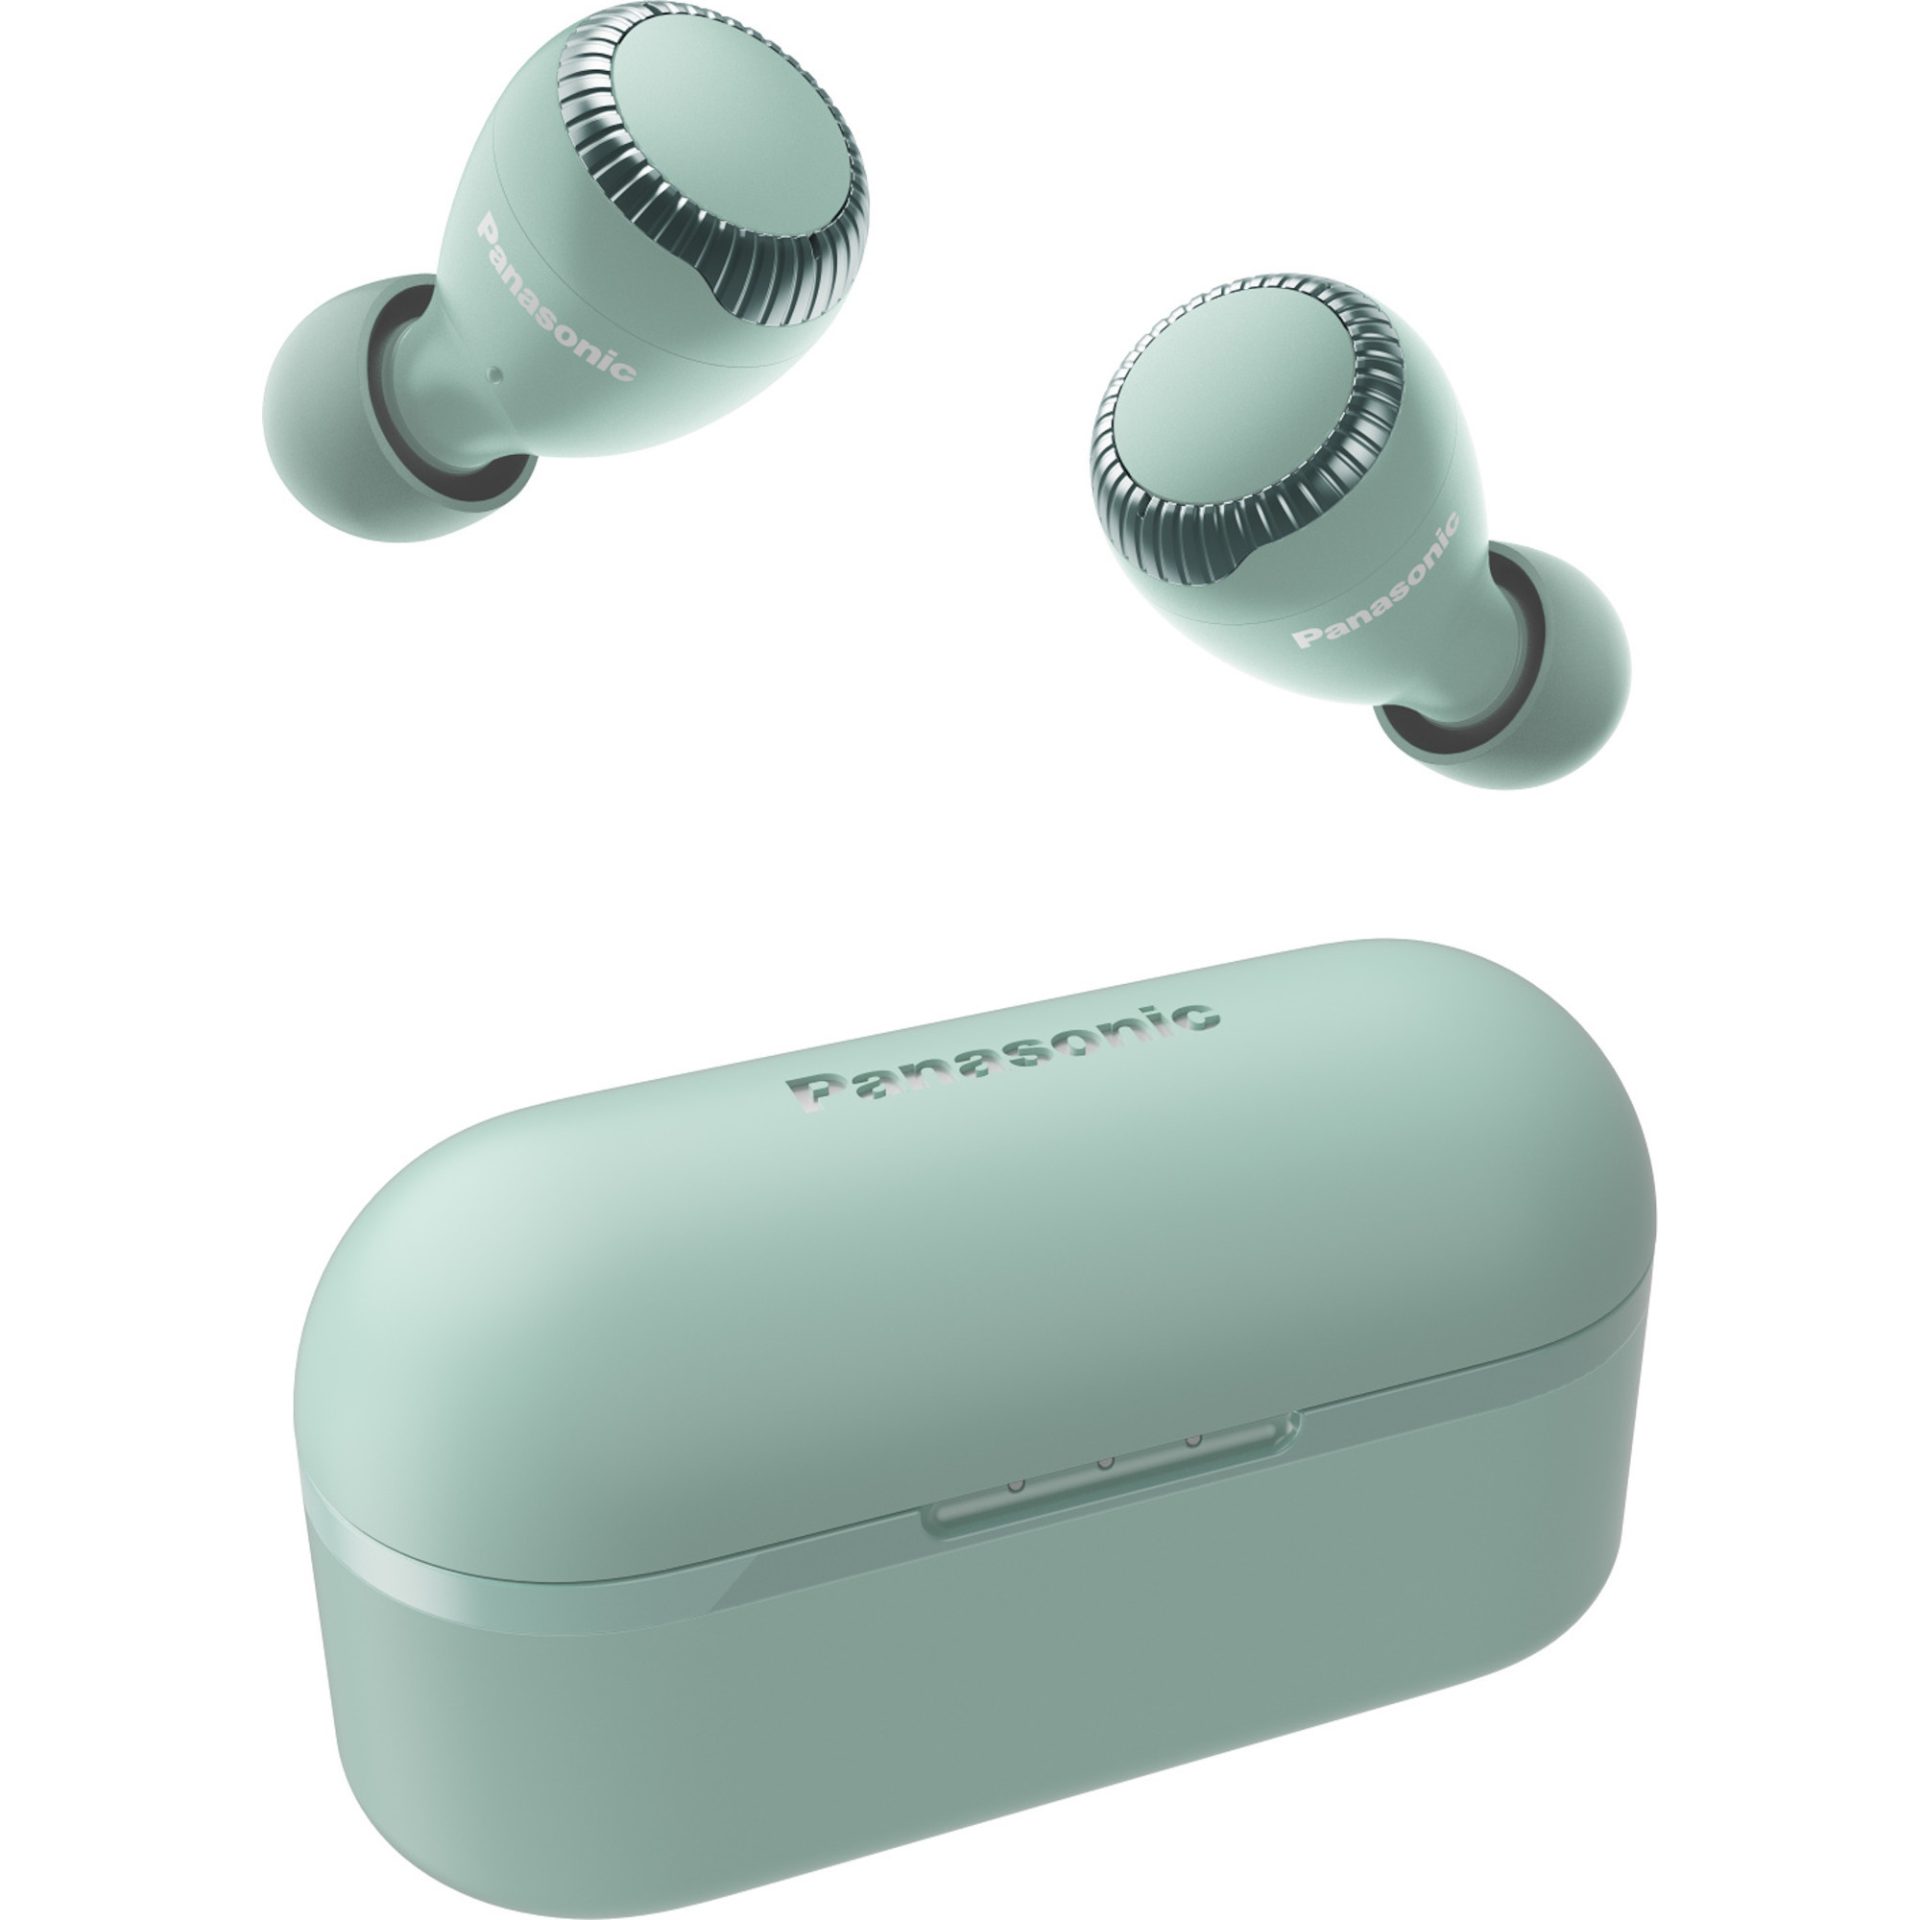 Panasonic RZ-S300 True Wireless Bluetooth sluchátka do uší (6 mikrofonů MEMS, 30h přehrávání s nabíjecím pouzdrem, IPX4 voděodolnost, dosah 10m), zele